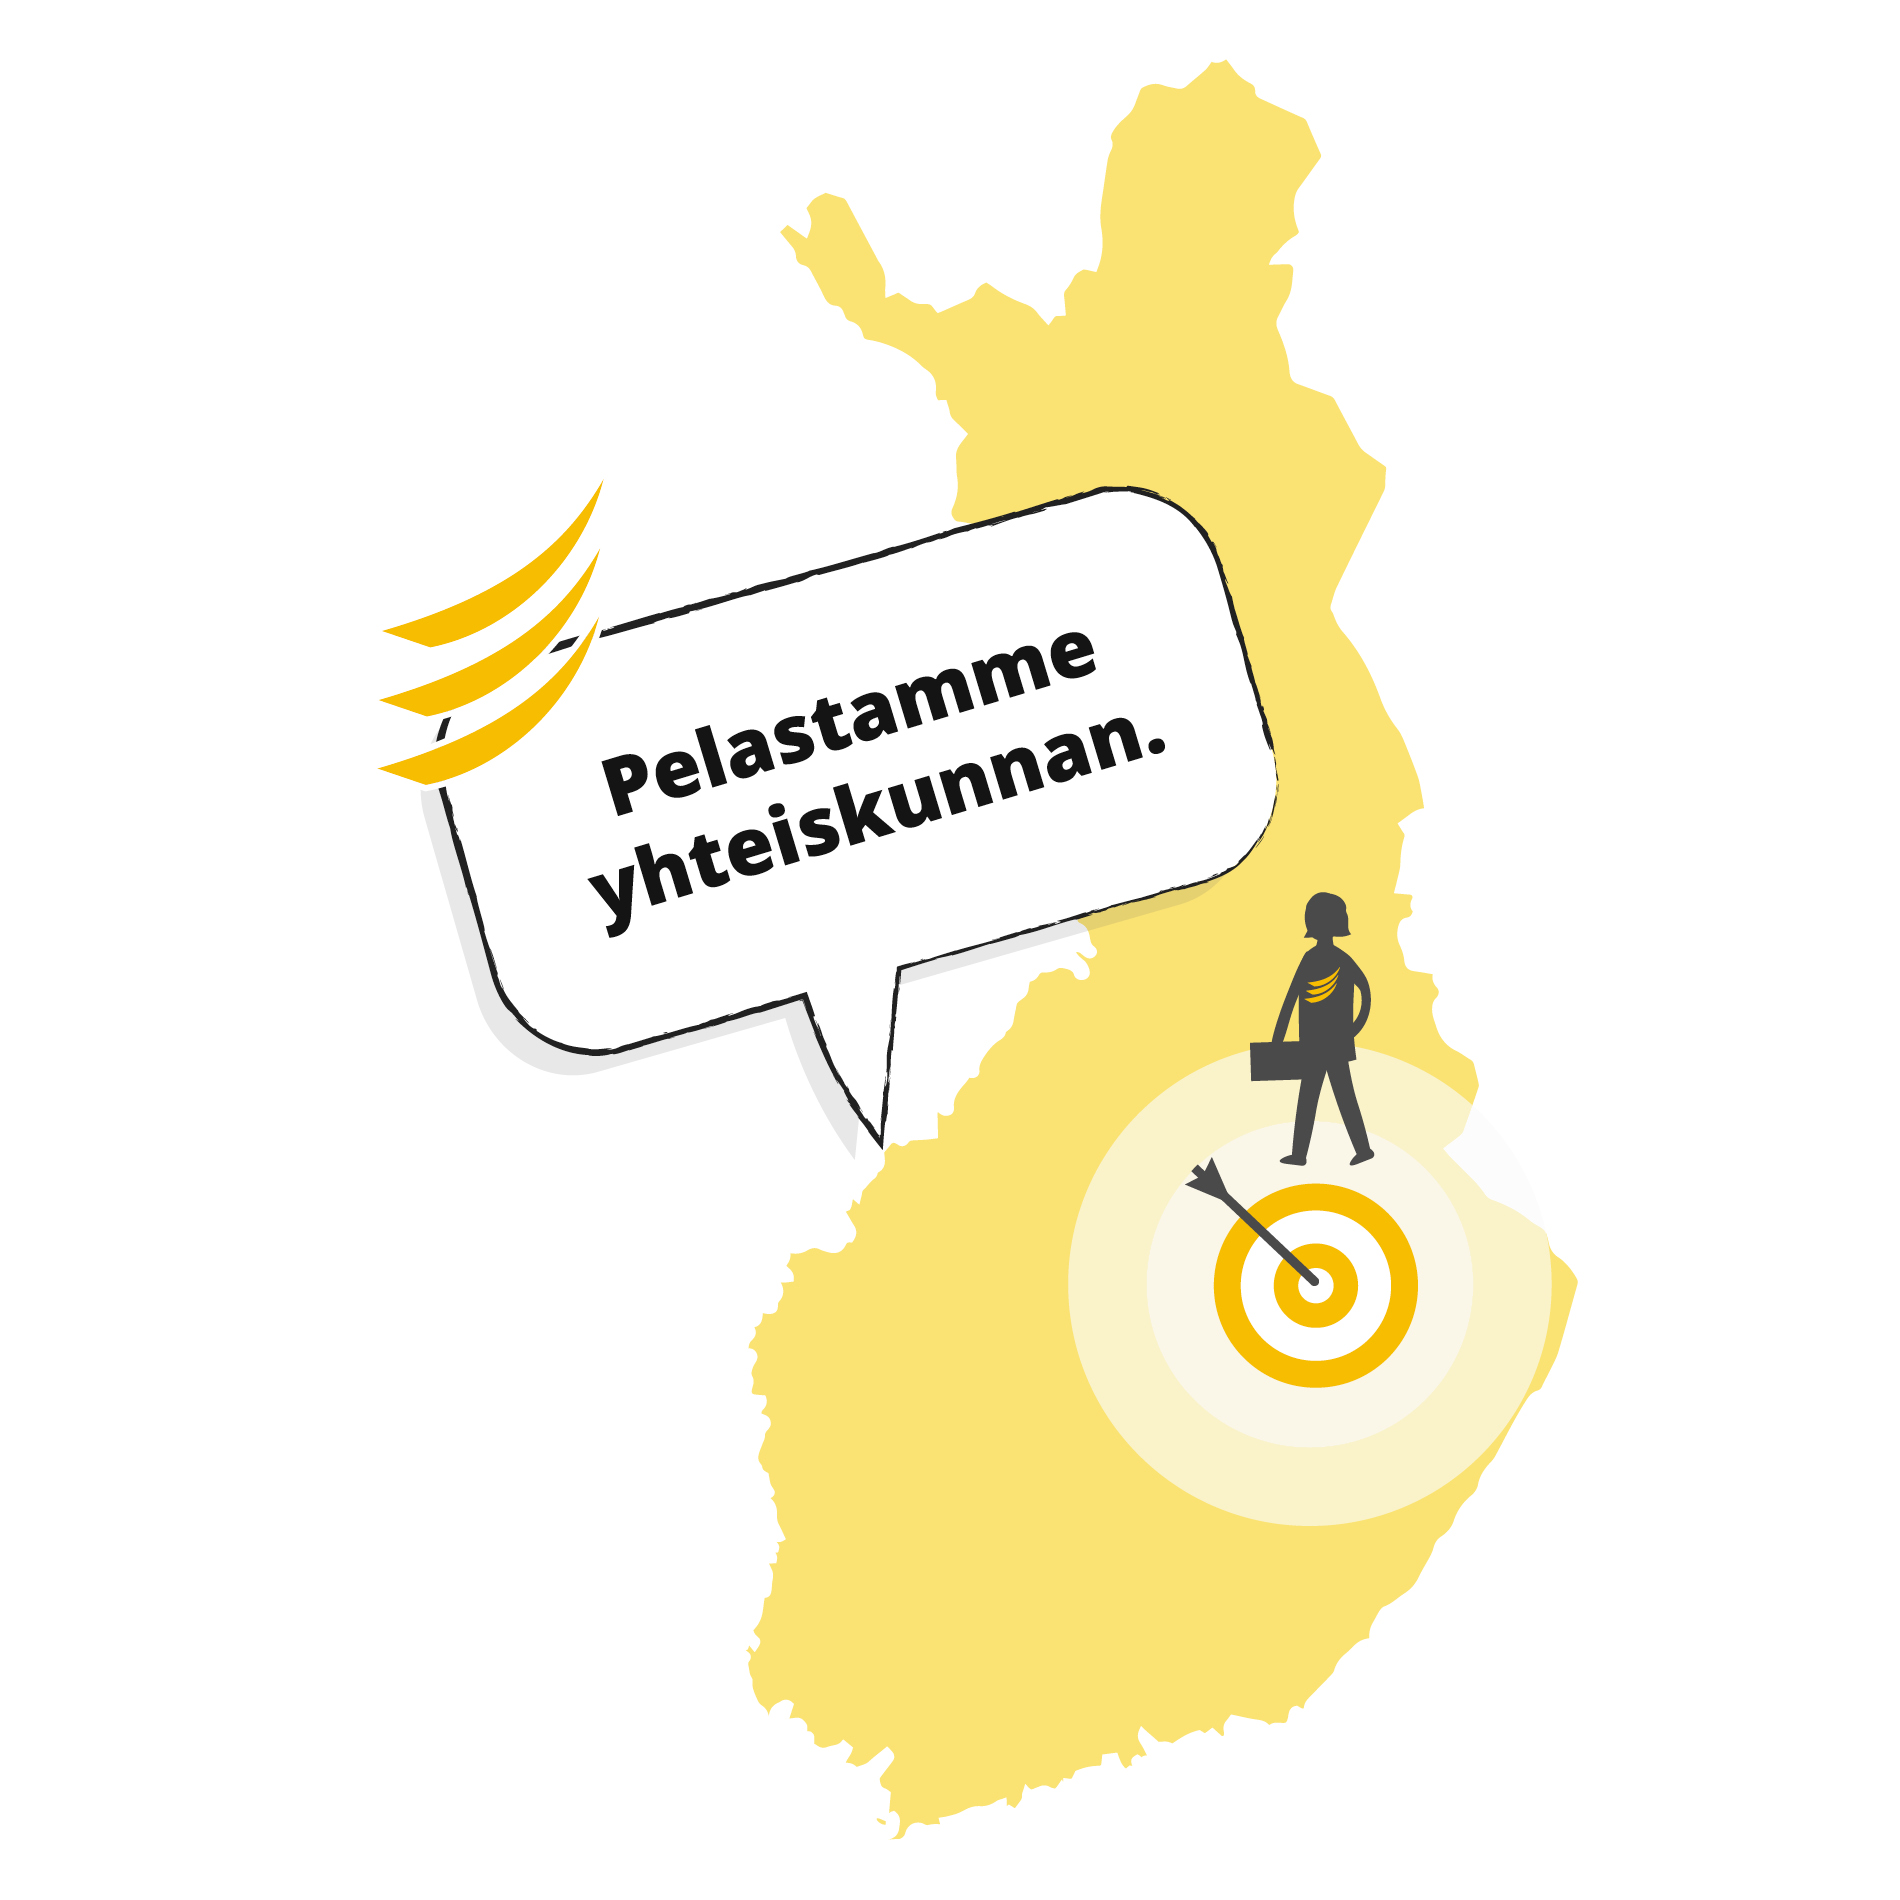 Piirroskuva, jossa on Suomen kartta ja Pohjois-Savon kohdalla nuoli ja ihminen, ja puhekuplassa on teksti "Pelastamme yhteiskunnan".